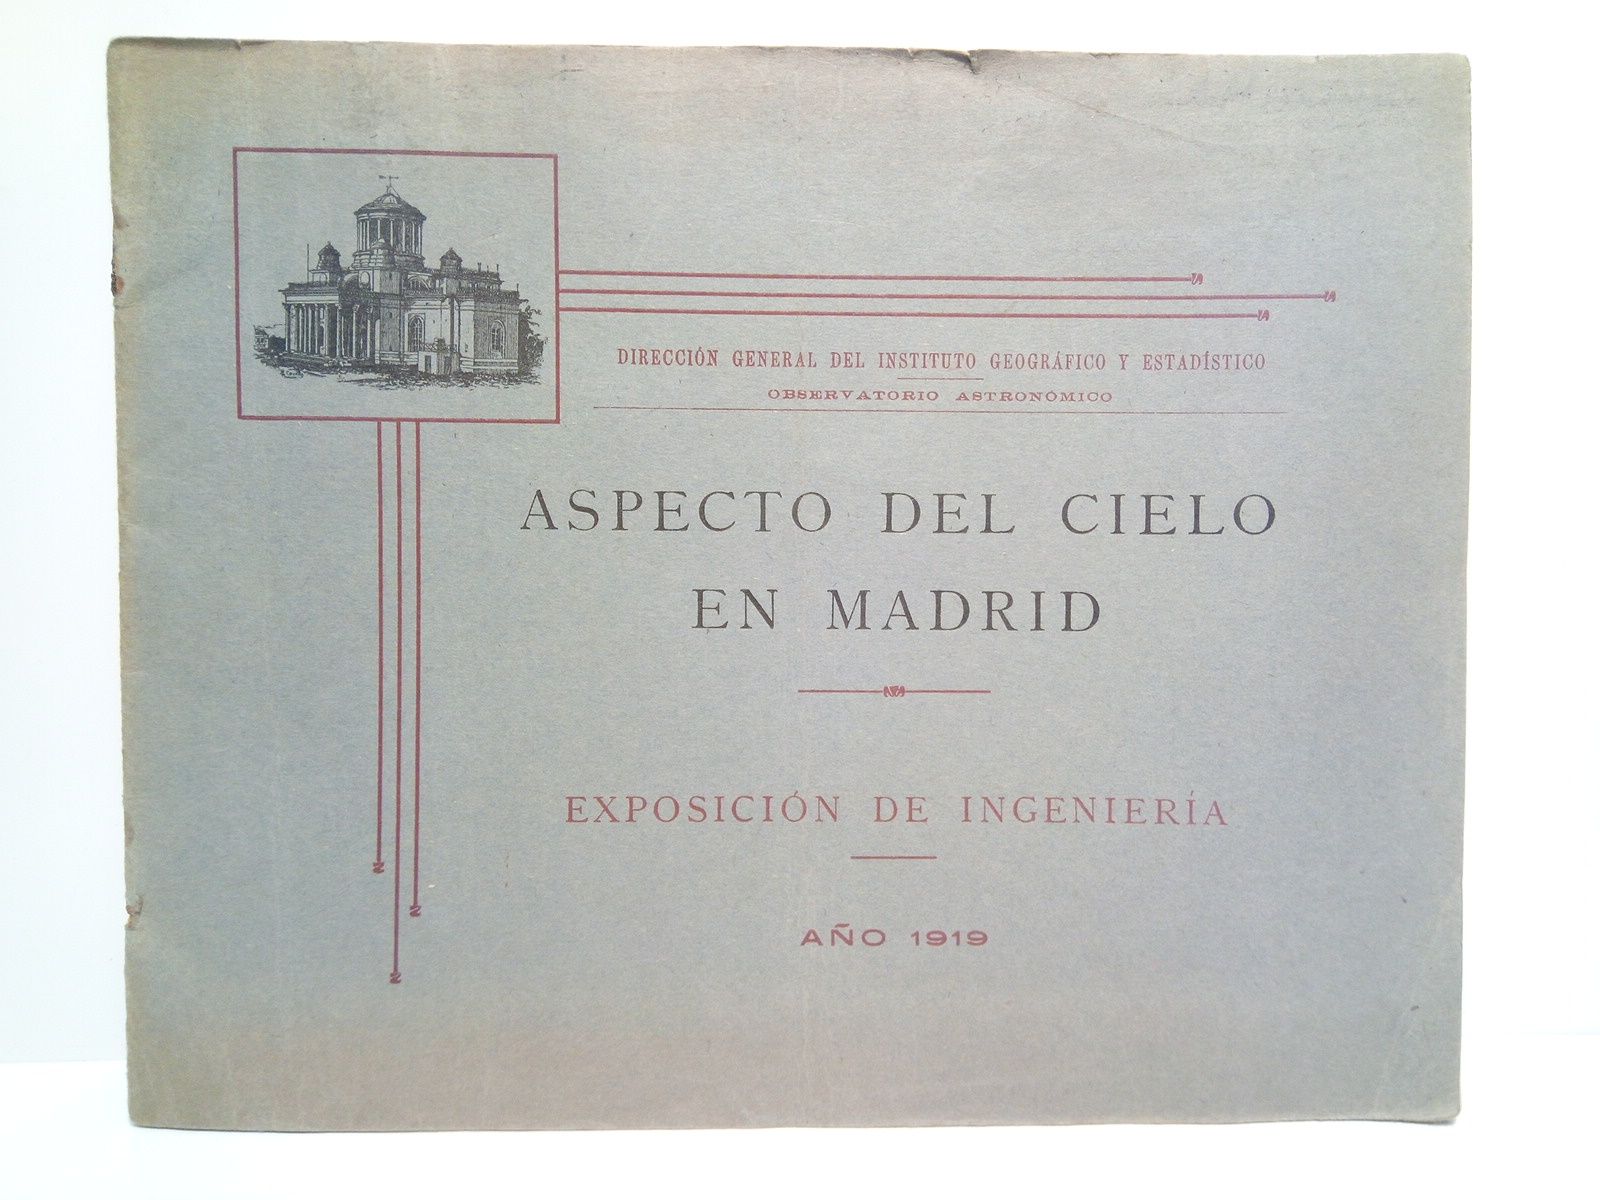 DIRECCION GENERAL DEL INSTITUTO GEOGRFICO Y ESTADISTICO - Aspecto del cielo en Madrid. Exposicin de Ingeniera en el Observatorio Astronmico, 1919